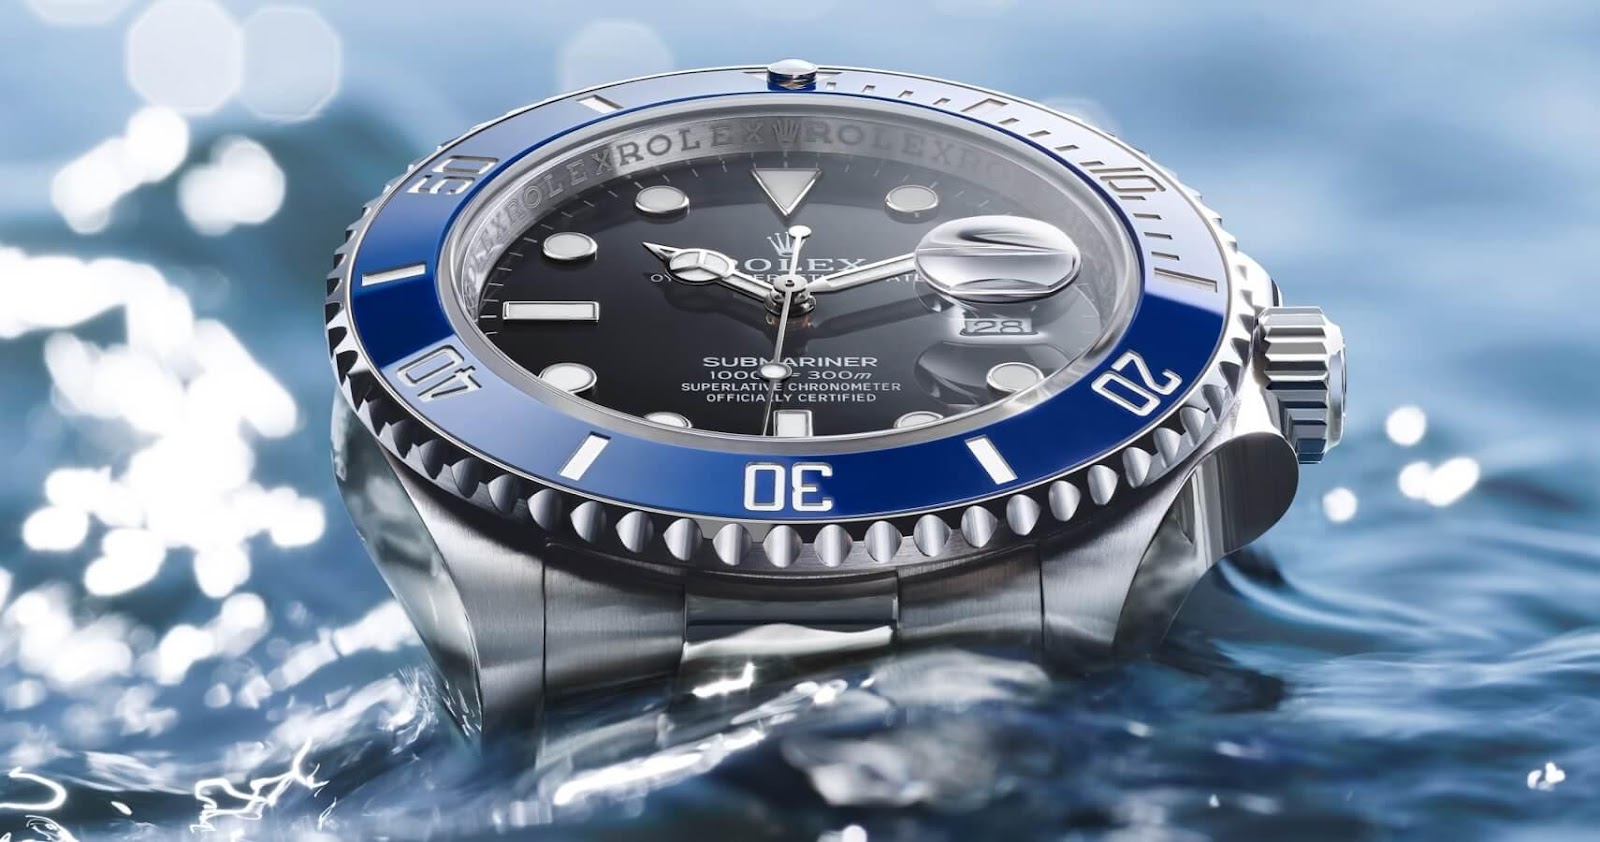 Duyên kỳ ngộ: Hơn 4 năm thất lạc dưới đáy biển, chiếc đồng hồ Rolex giá gần 500 triệu đồng lại quay về với chủ cũ như một định mệnh - Ảnh 3.